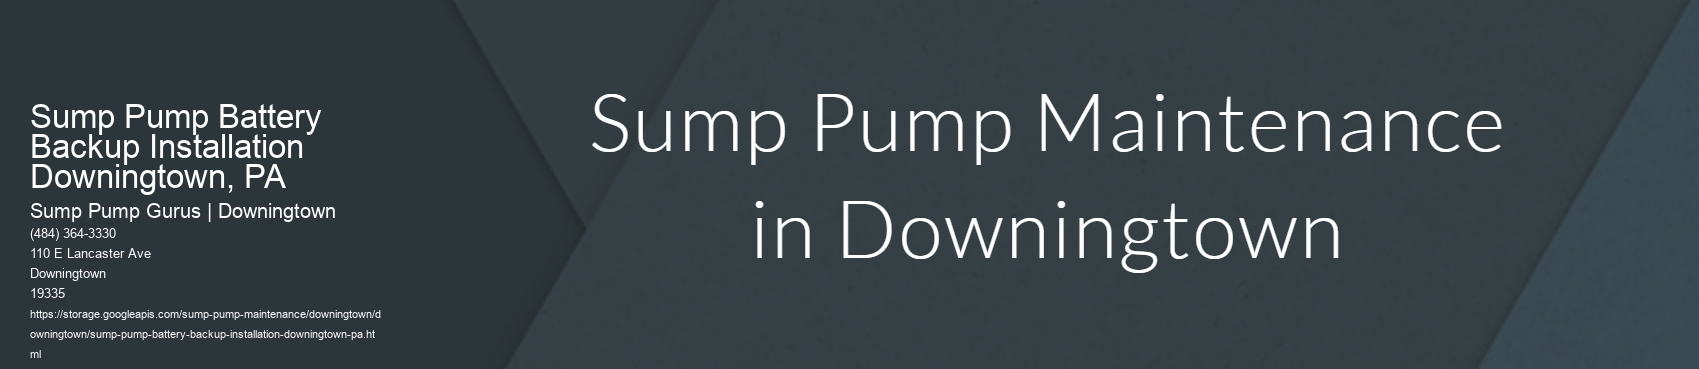 Sump Pump Battery Backup Installation Downingtown, PA